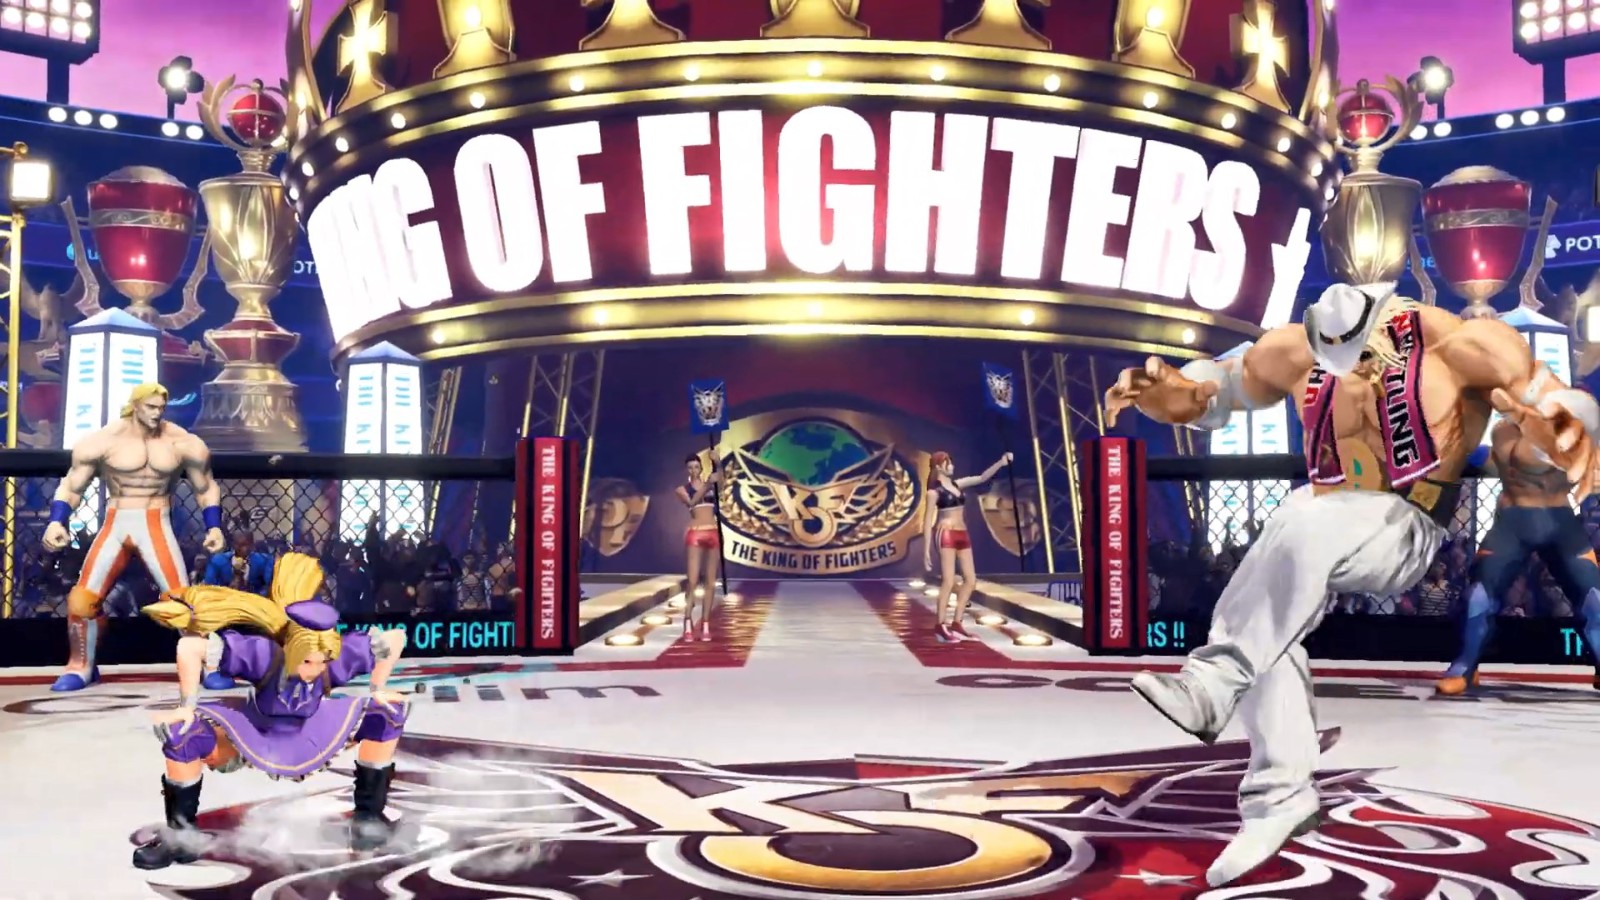 《拳皇15》新DLC角色“四條雛子”11月14日上線